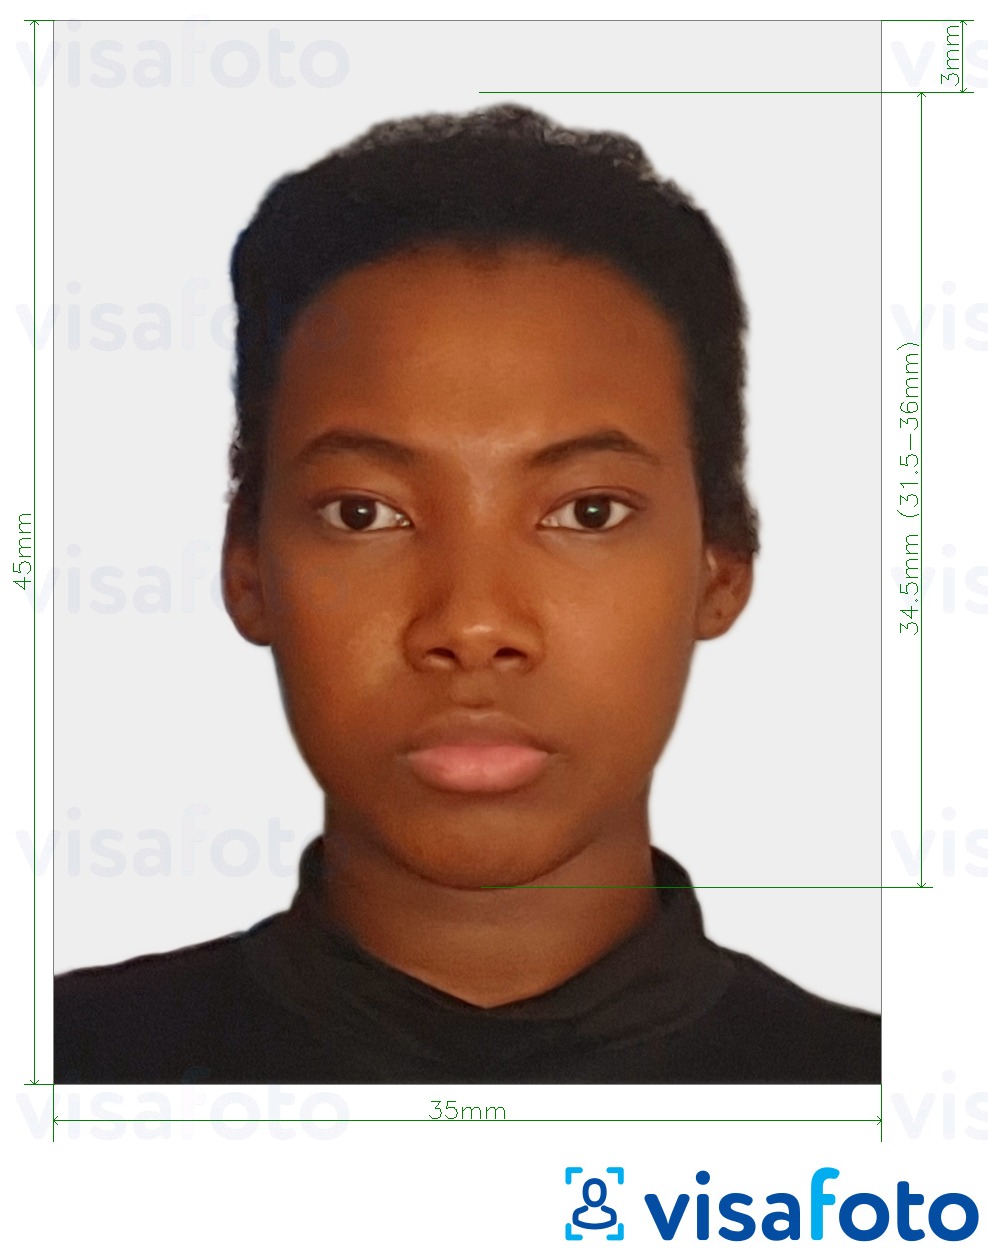 Contoh foto untuk Togo visa 4.5x3.5 cm (45x35mm) dengan spesifikasi saiz yang tepat.